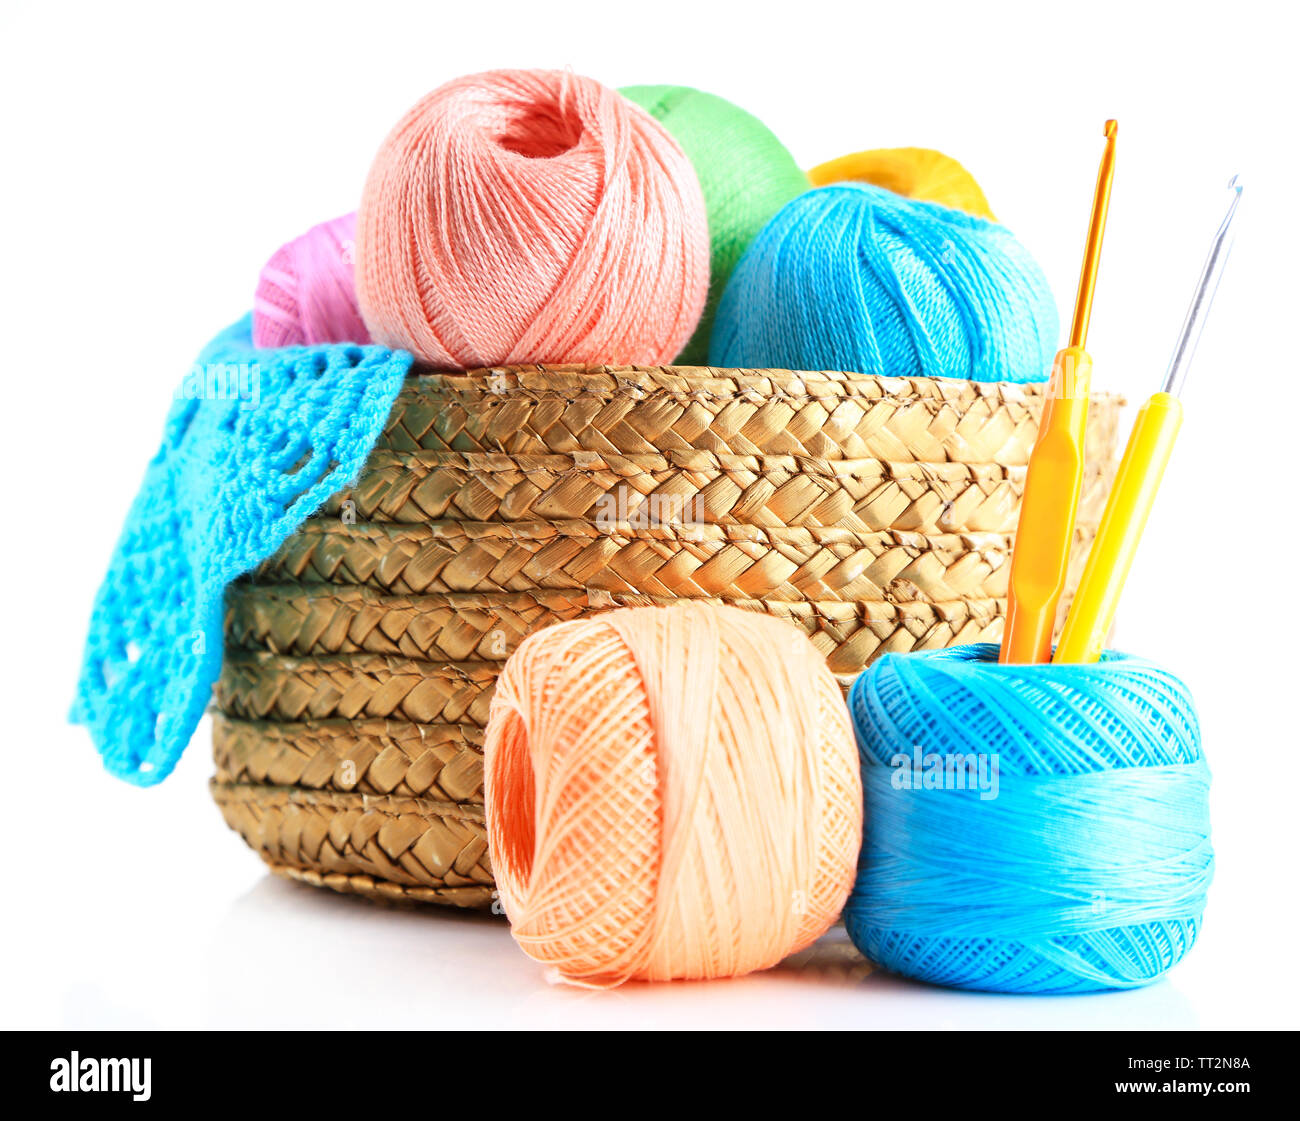 Knitting Using a Crochet Hook